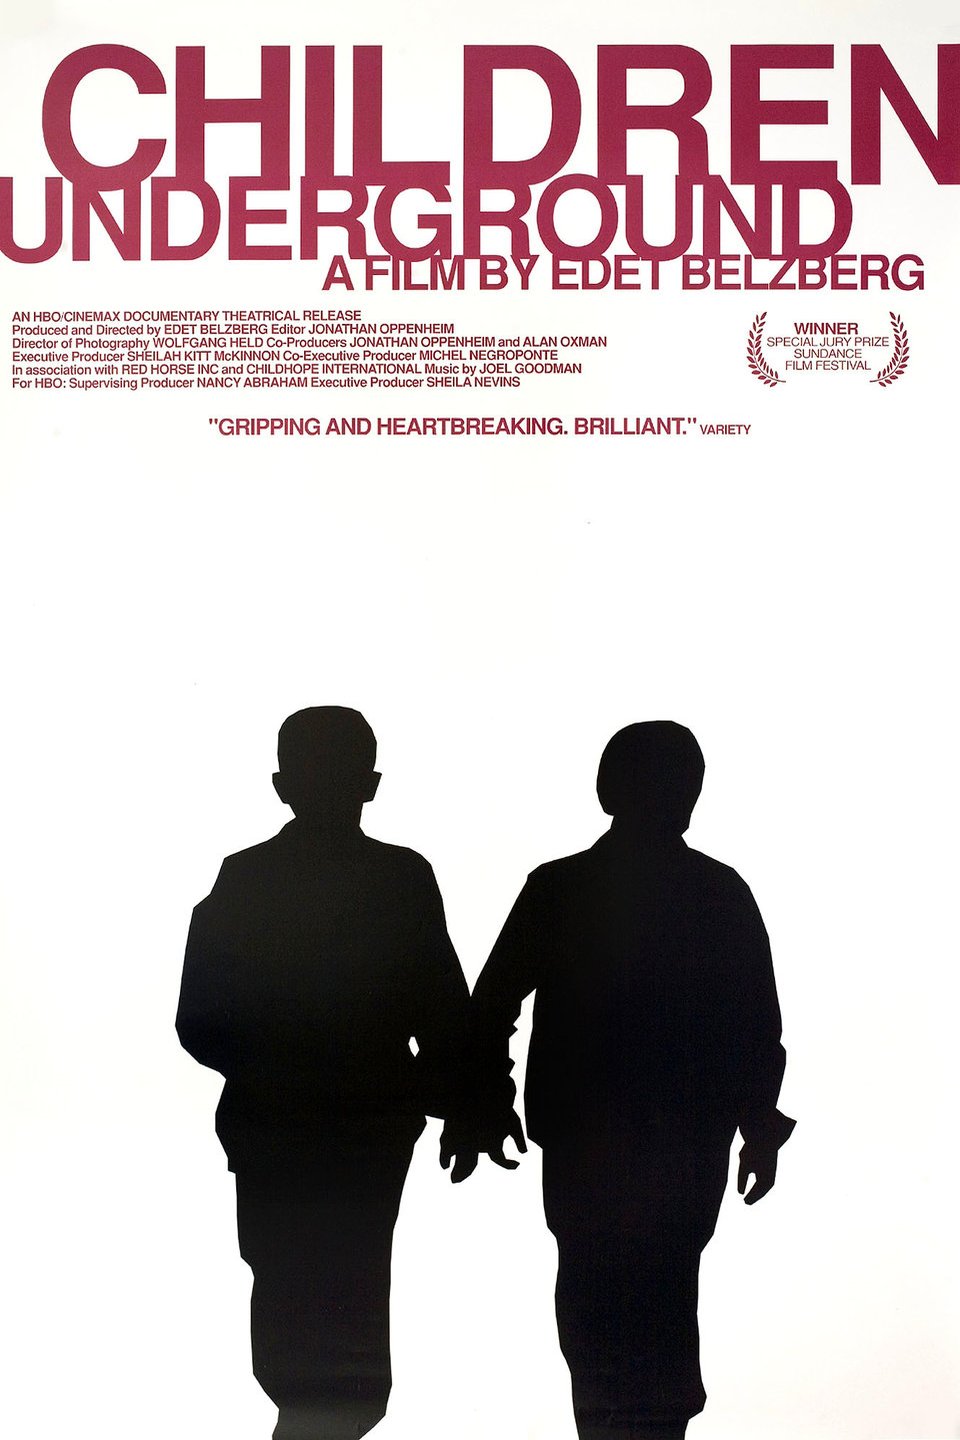 Poster of the movie Children Underground